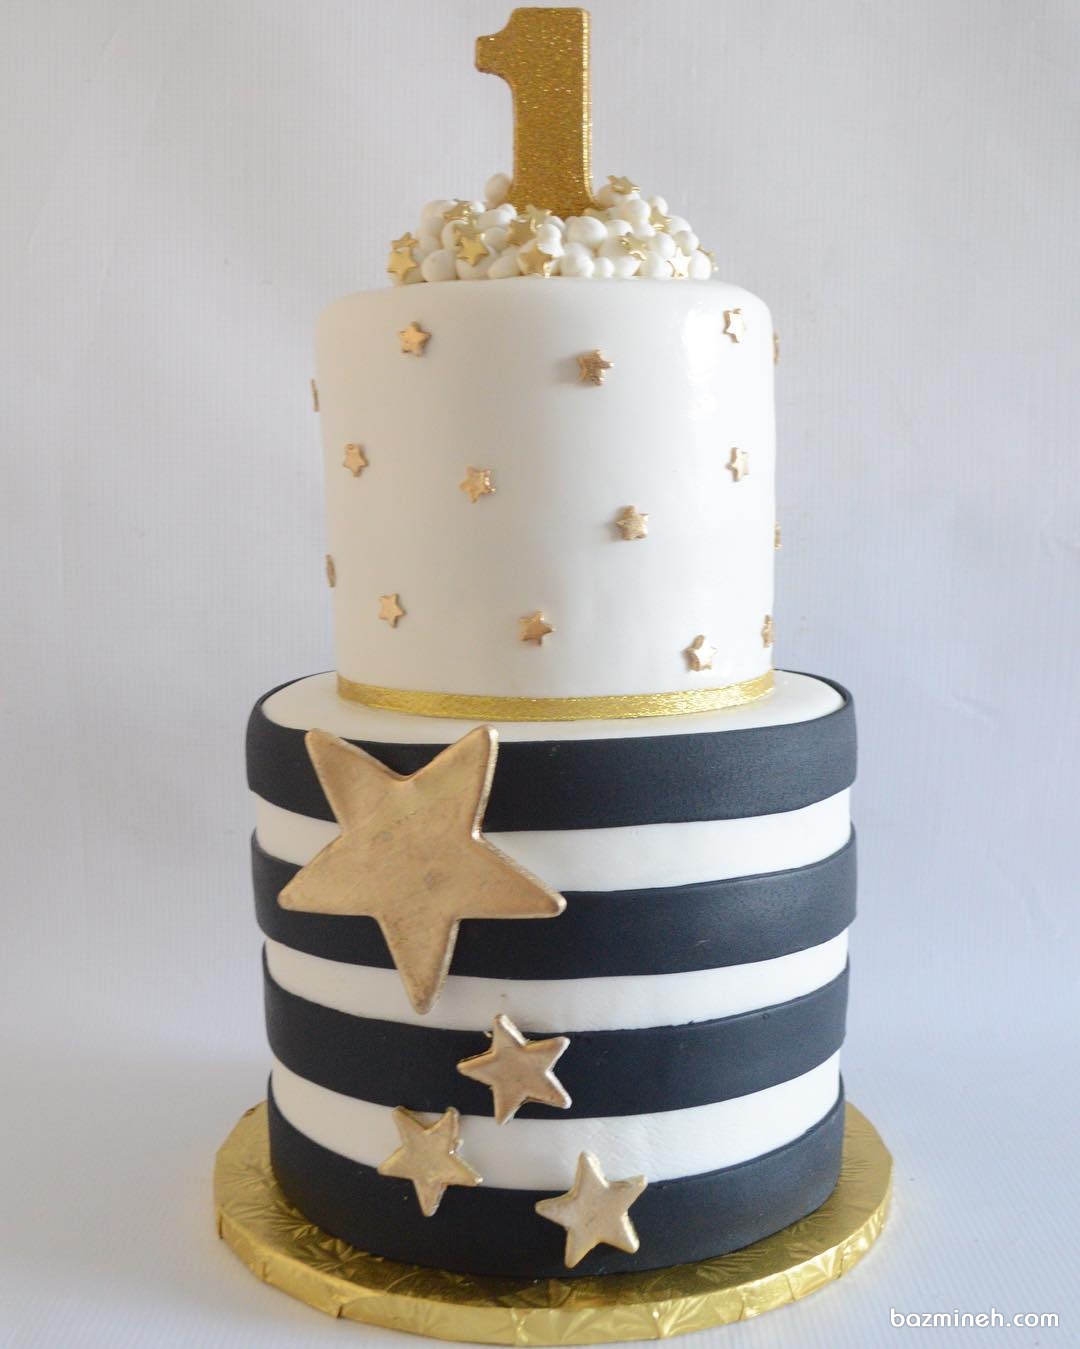 کیک جشن تولد یکسالگی کودک با تم ستاره